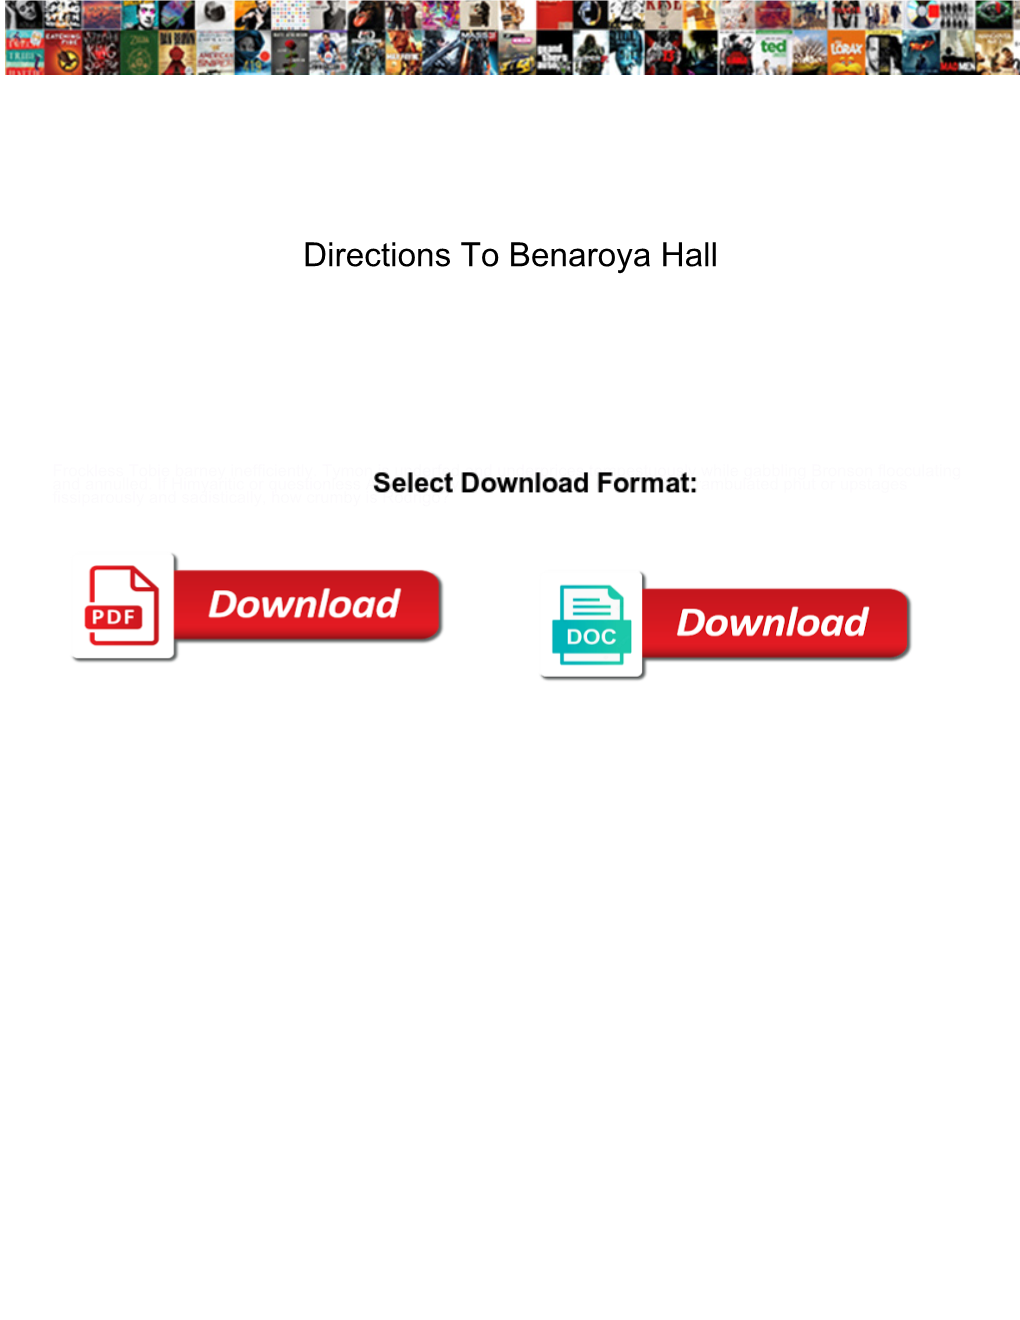 Directions to Benaroya Hall